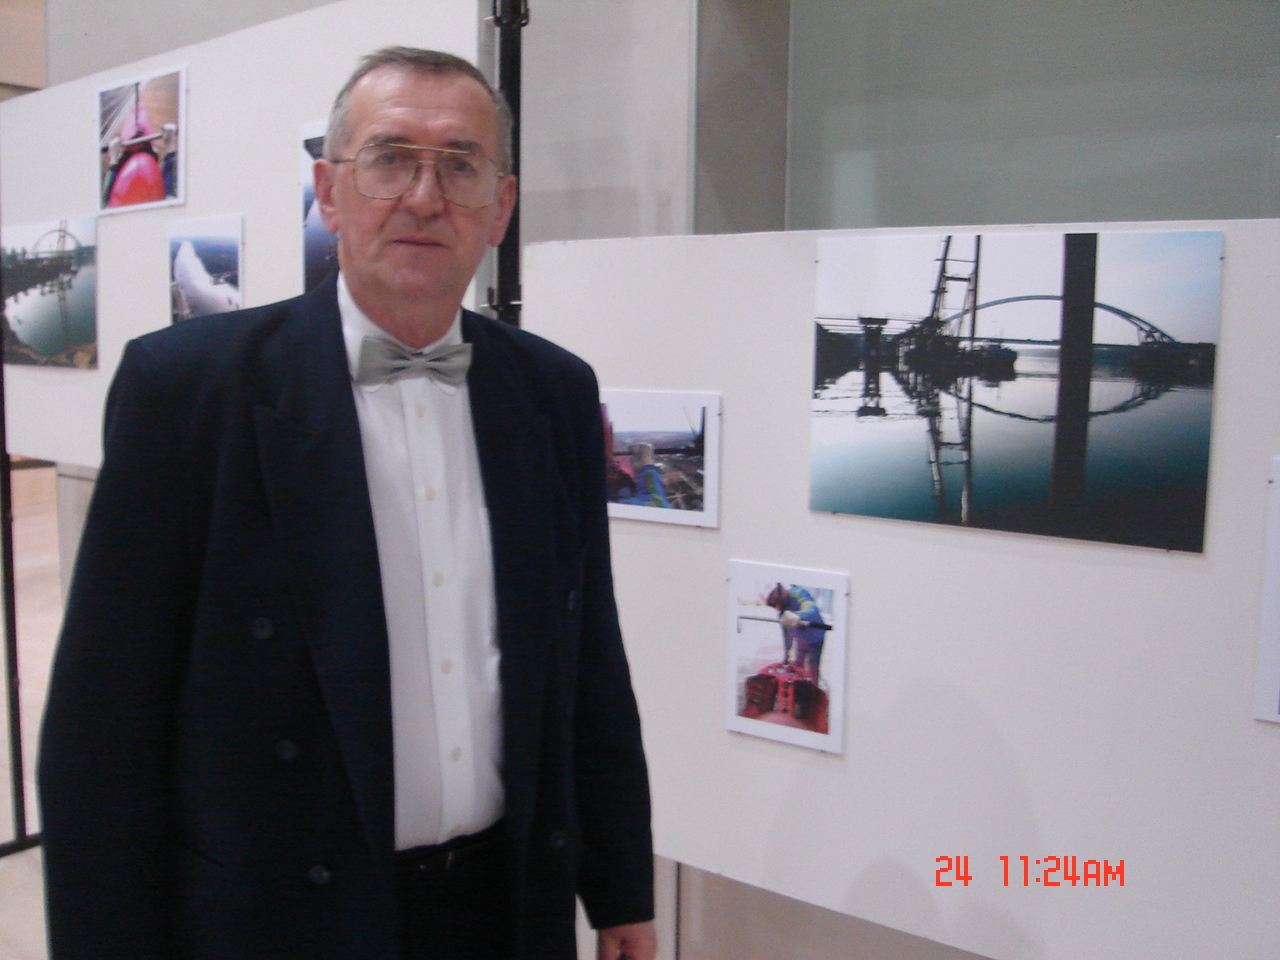 Dunaújvárosi Főiskolán lévő légifelvételek kiállítás megnyitóján - 2007